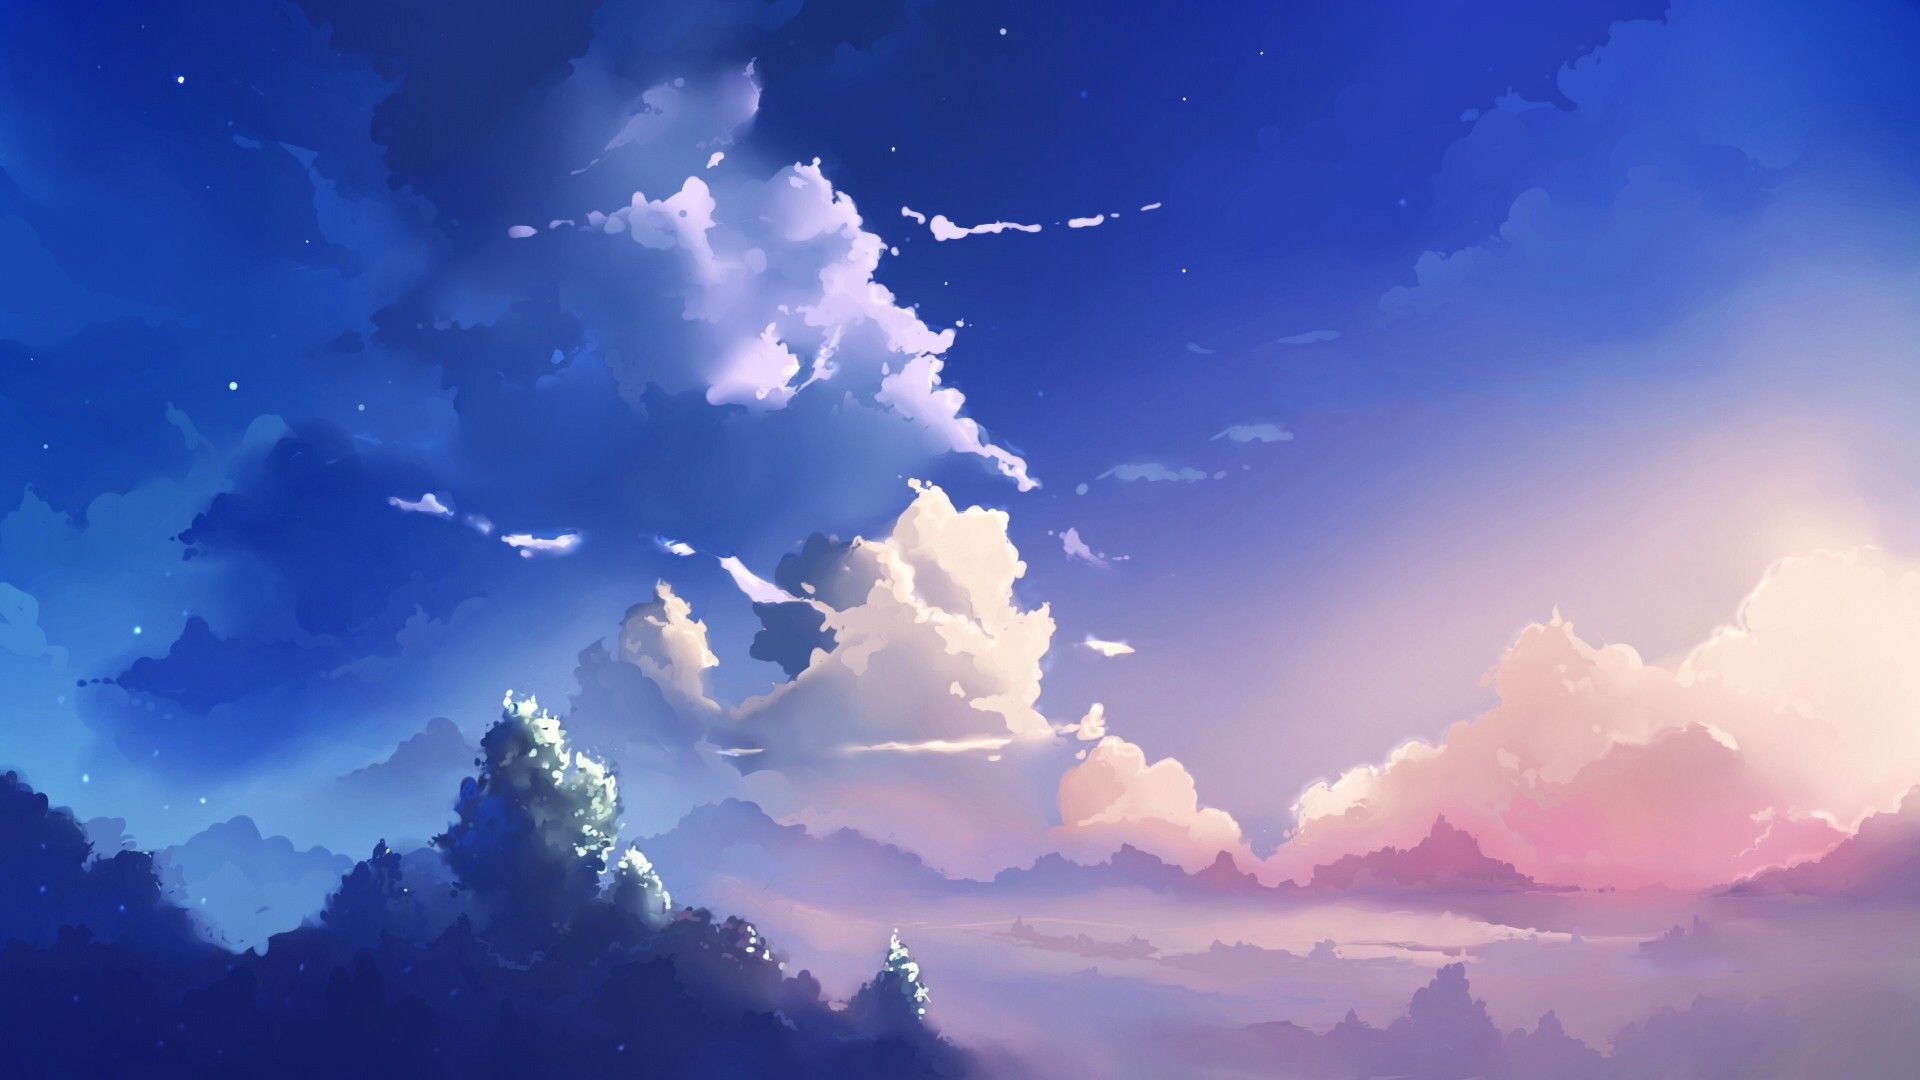 Với những ảnh nền anime đám mây, bạn sẽ được chiêm ngưỡng những tác phẩm nghệ thuật đầy sức sống trong thế giới tuyệt đẹp của anime. Từ những con mây đơn giản đến những tác phẩm đầy màu sắc, những hình ảnh này sẽ mang đến cho bạn cảm giác thanh thản và thư giãn.